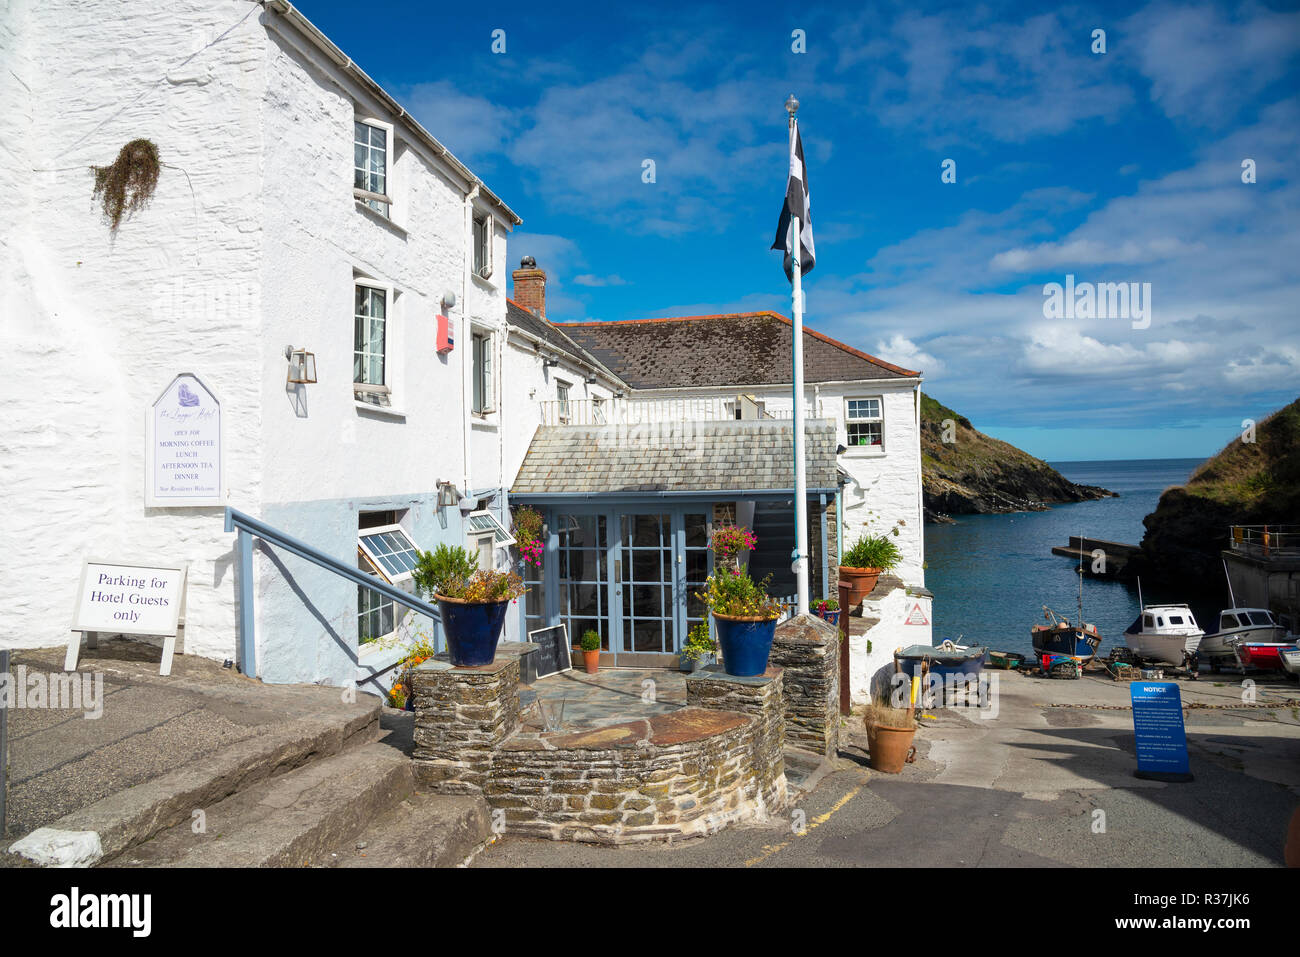 Vue de l'hôtel à la mode en ligne dans le joli village de pêcheurs de Cornouailles Portloe sur la péninsule de Roseland, Cornwall, Angleterre du Sud-Ouest, Royaume-Uni Banque D'Images